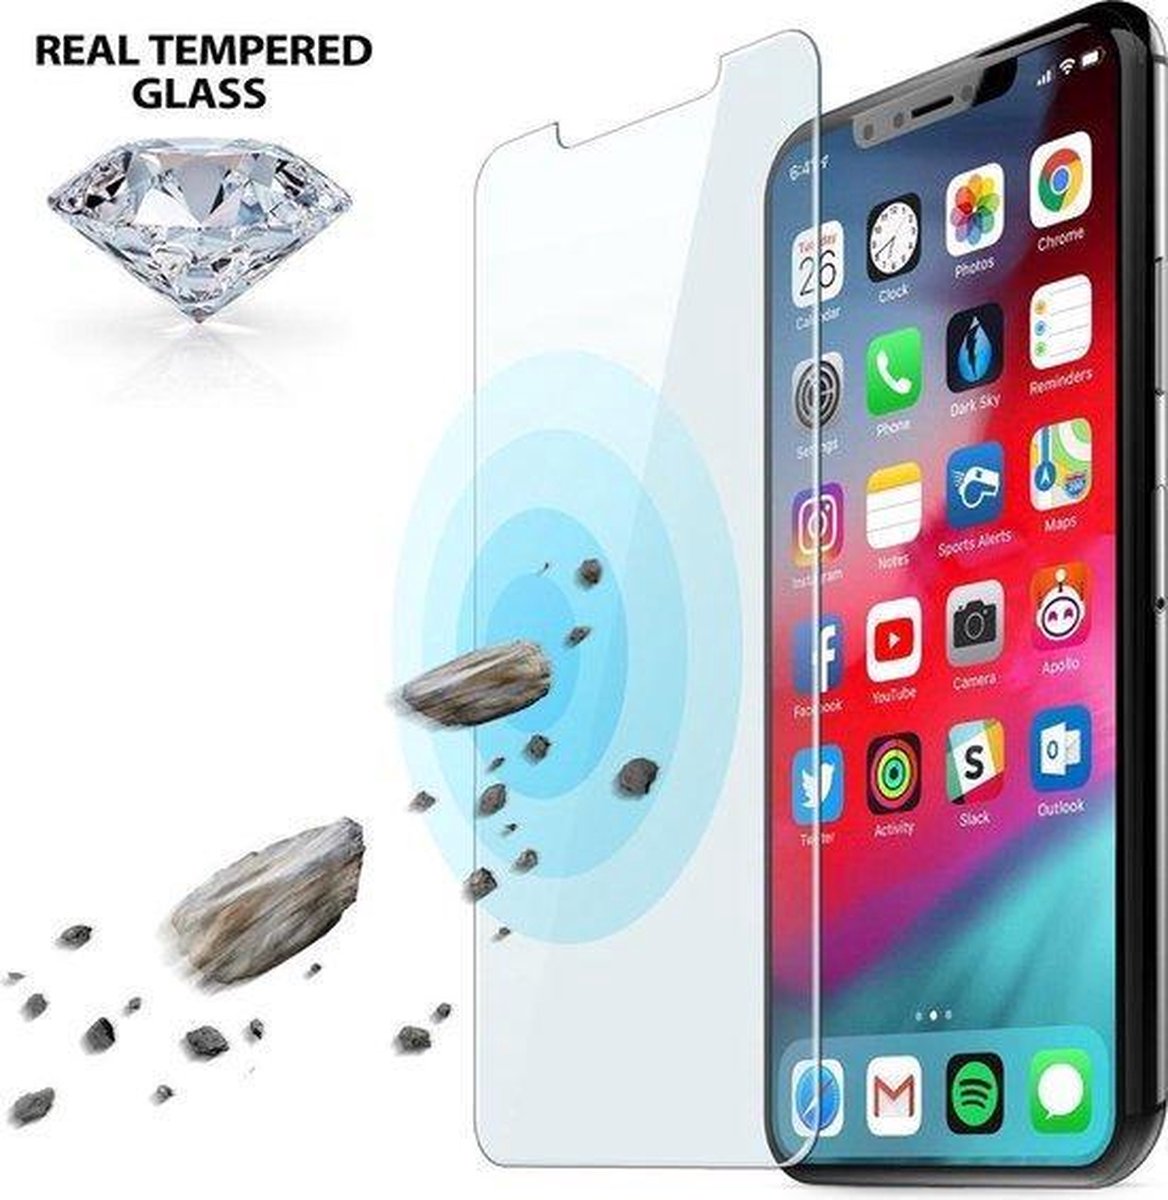 ✅ NIEUW 1 STUKS Apple iPhone 11XR Screenprotector / Screenprotector glas - Tempered Glass screen protector - iPhone XR Screenprotector glas - BY PROLEDPARTNERS ®